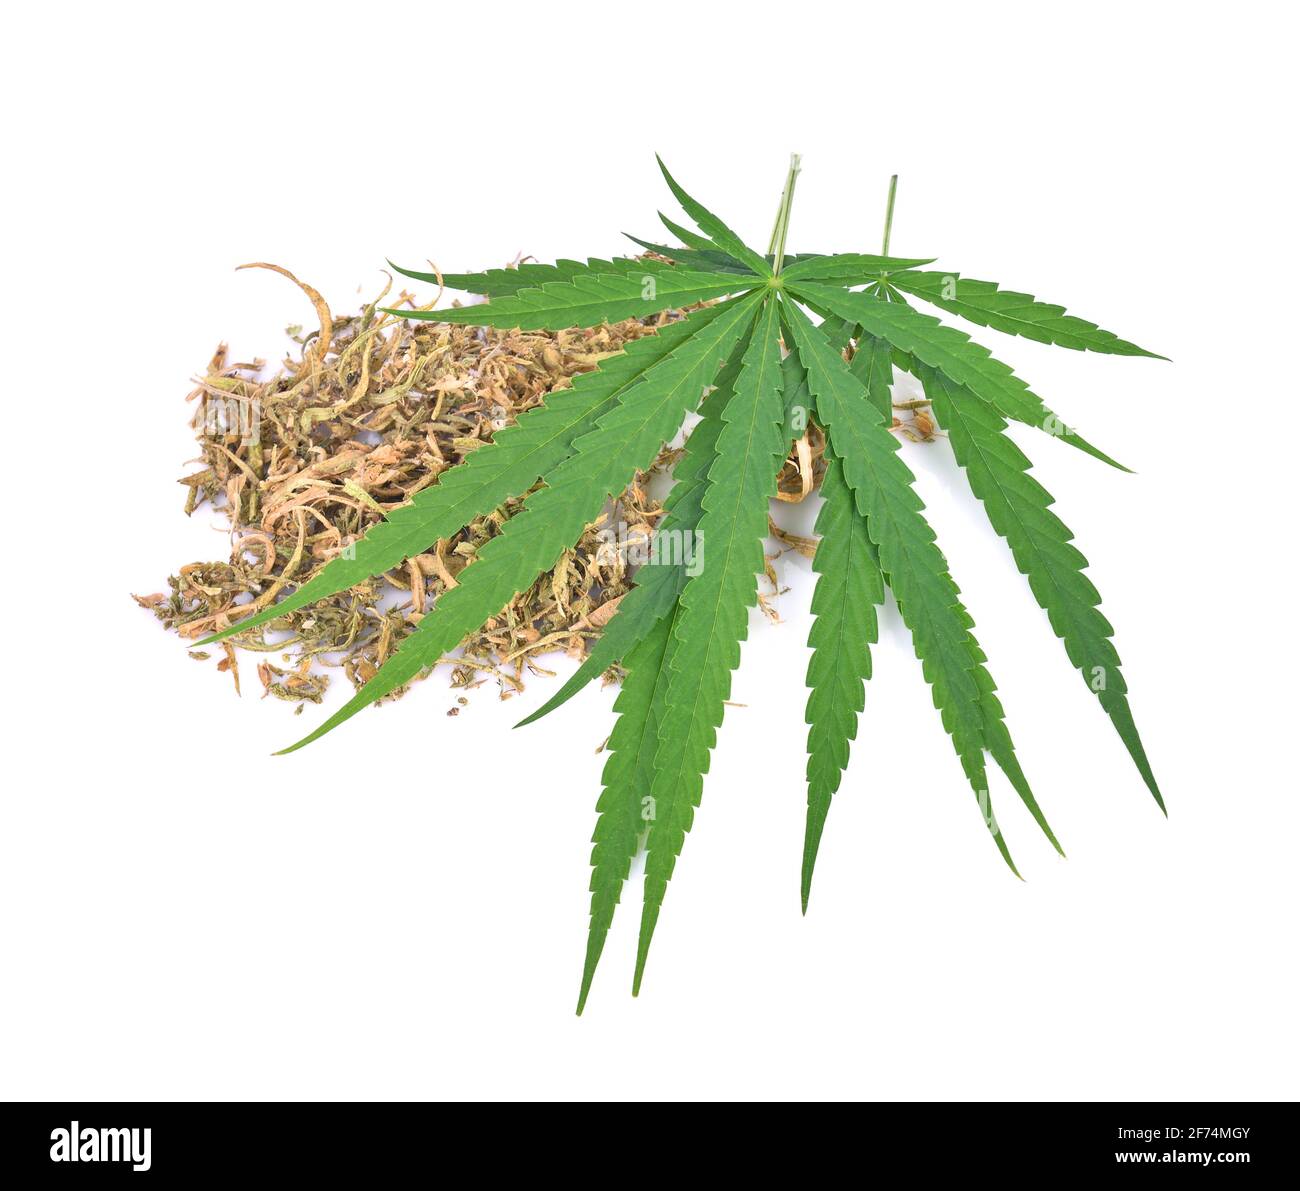 Cannabis leaf, marijuana leaf on white background Stock Photo